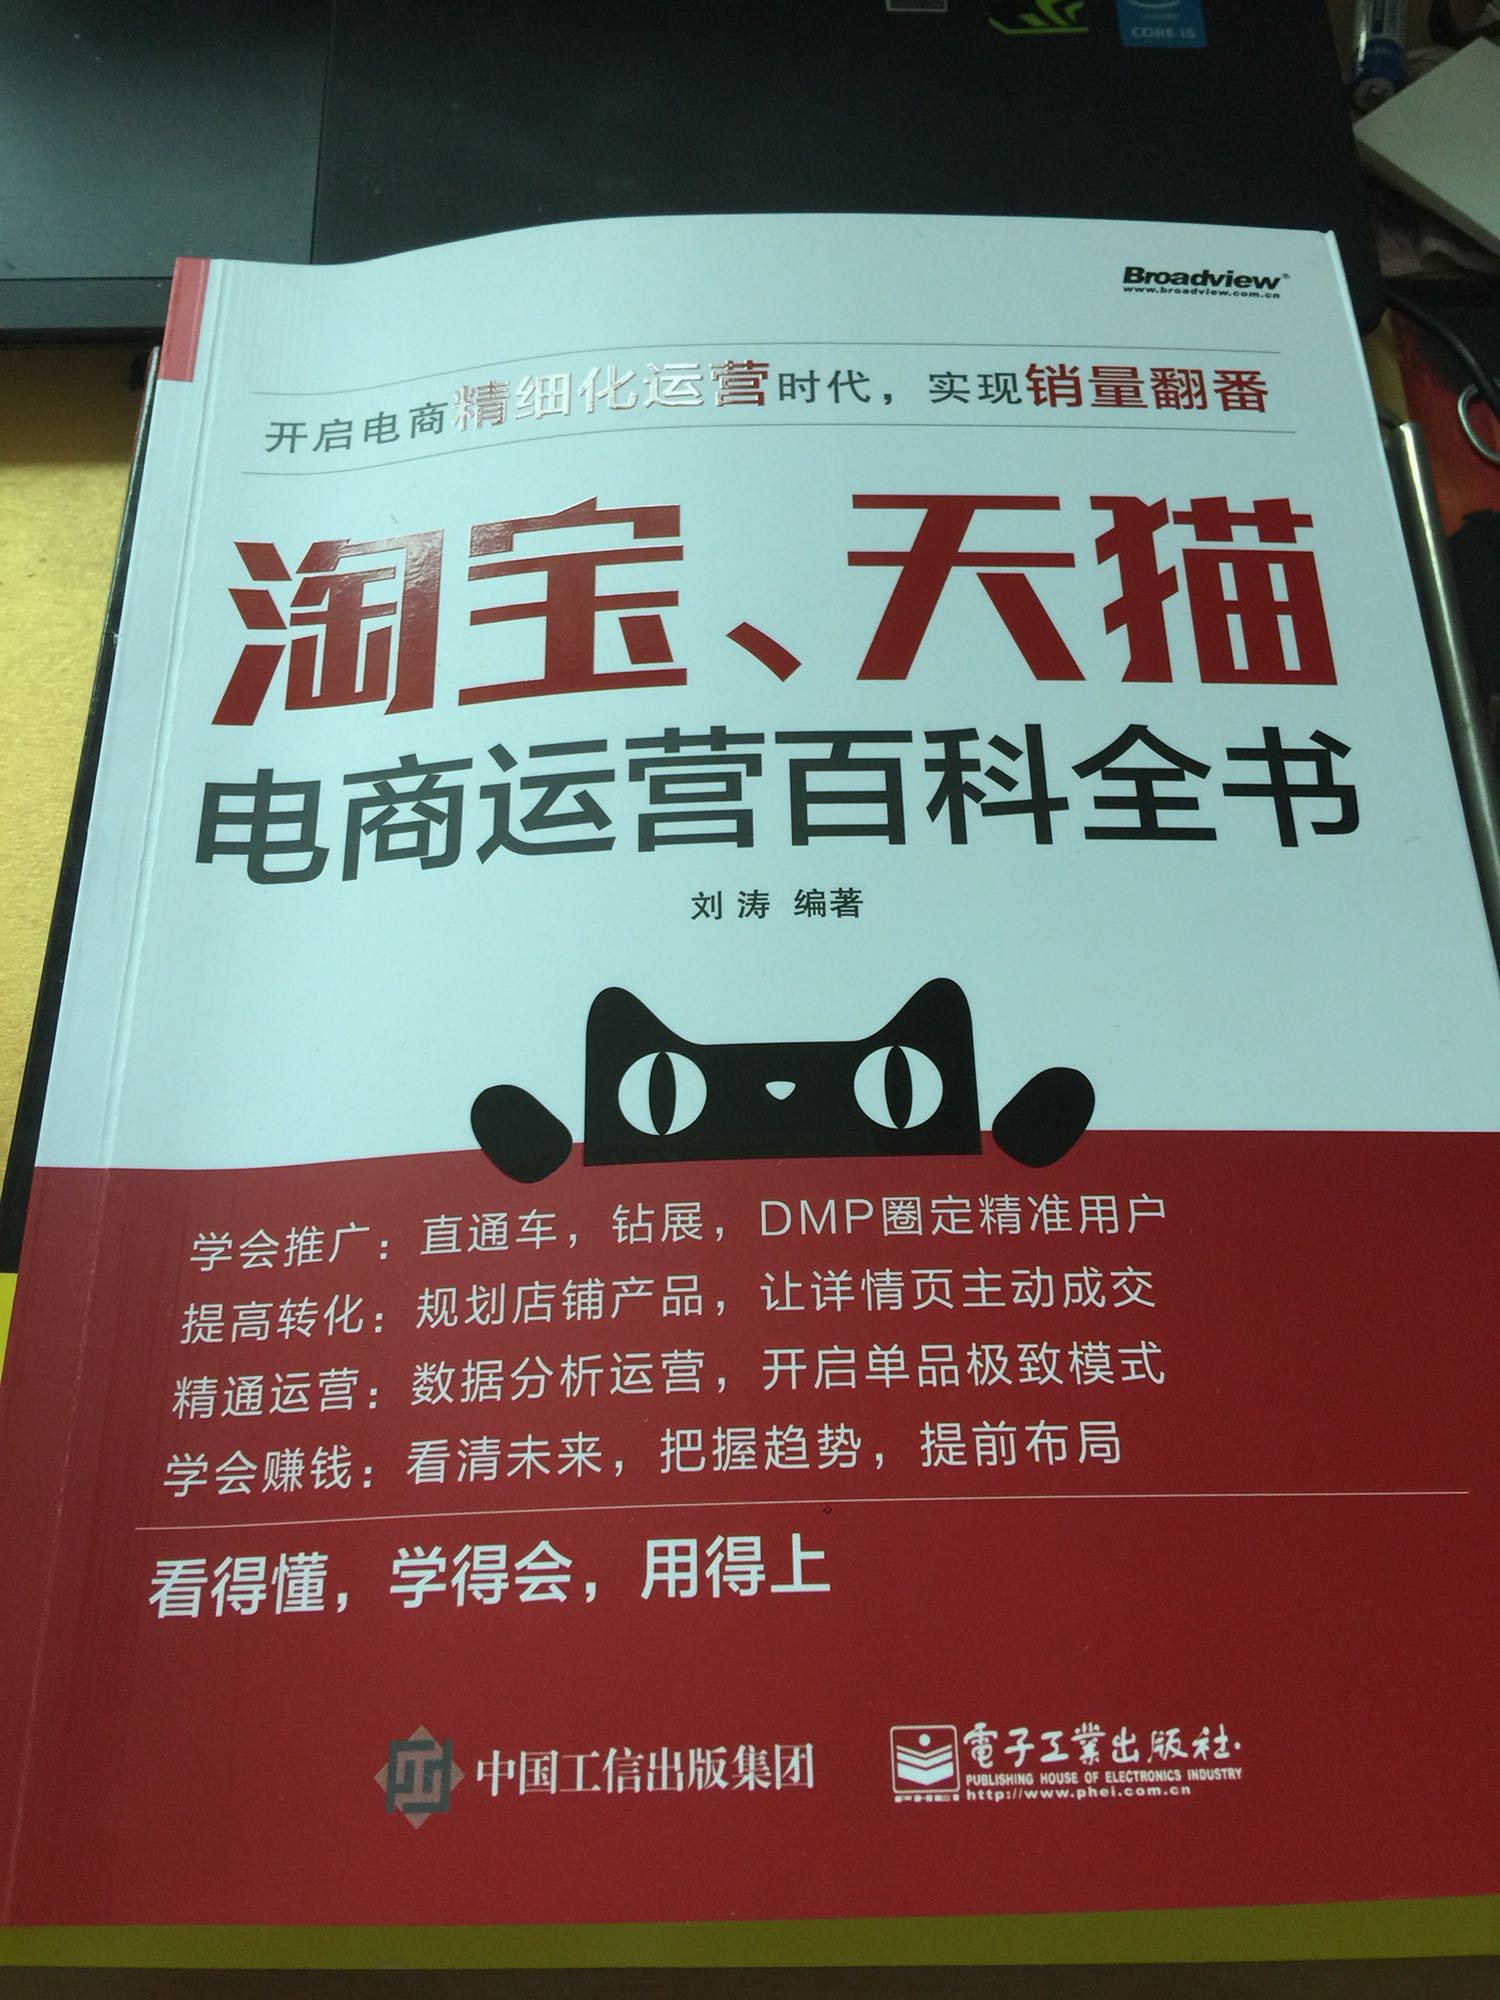 不错，全是实操，刘涛老师的书值得推荐，看了以后学会了很多